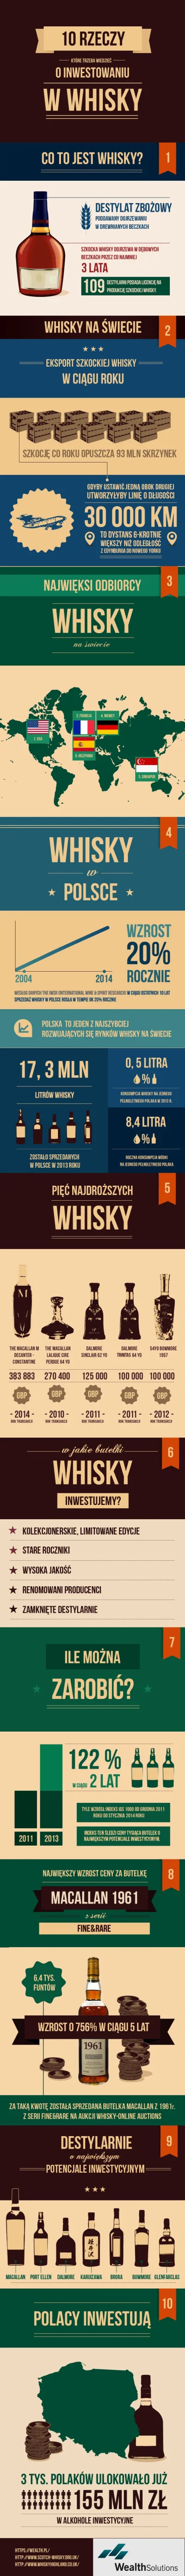 patryqo - 10 faktów o inwestowaniu w whisky [infografika]
Ile whisky wypijają Polacy...